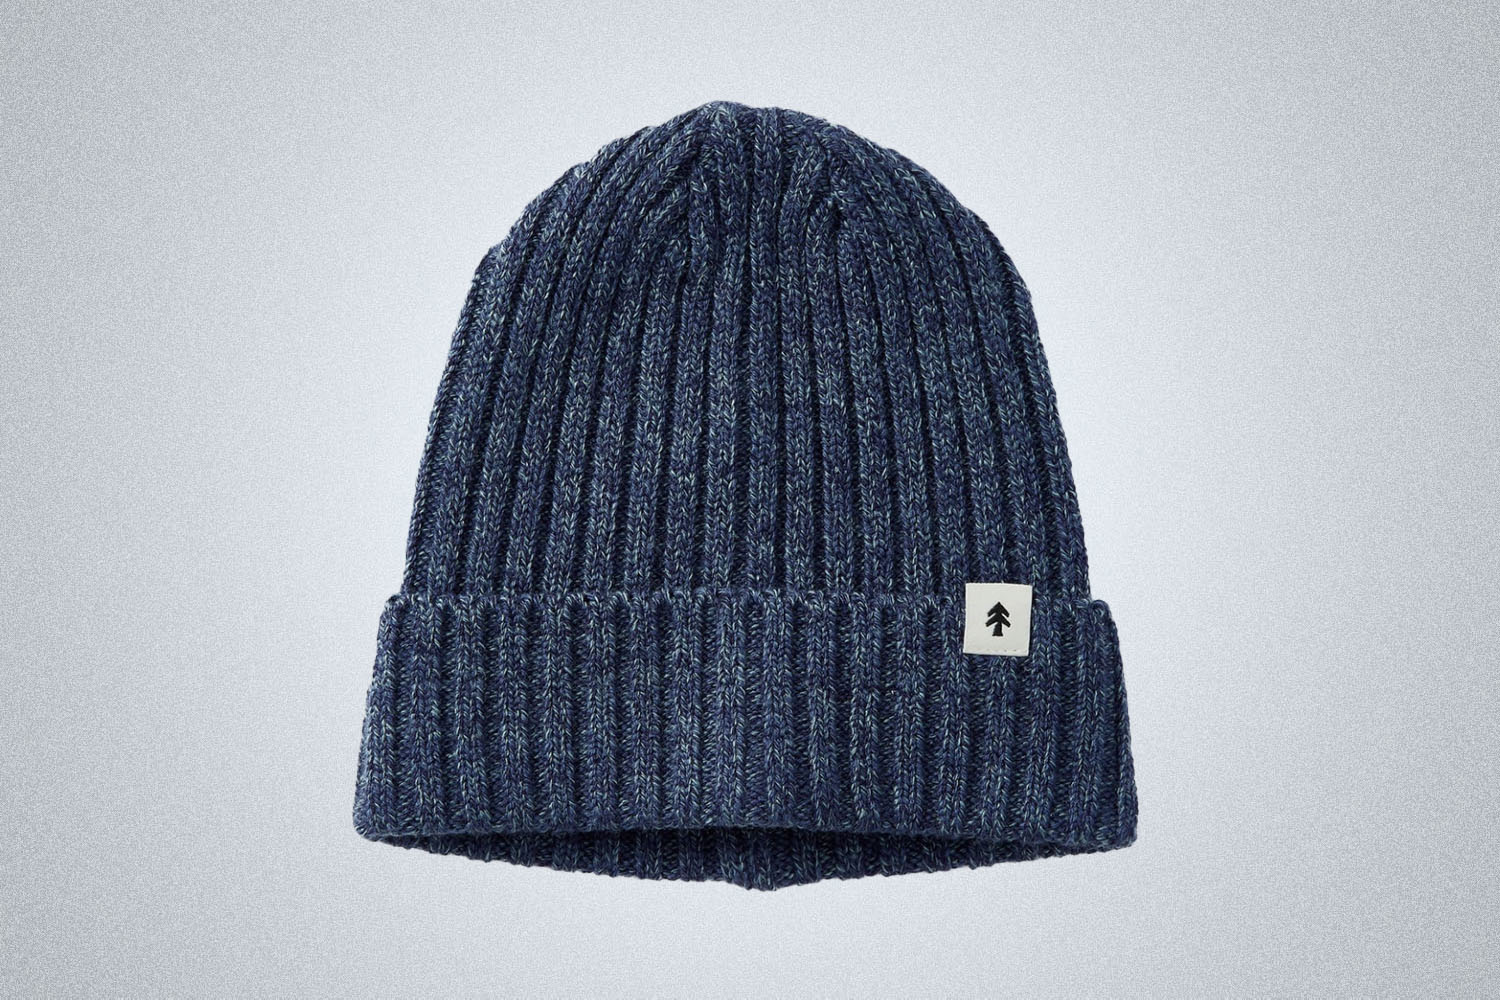 a knit blue beanie 